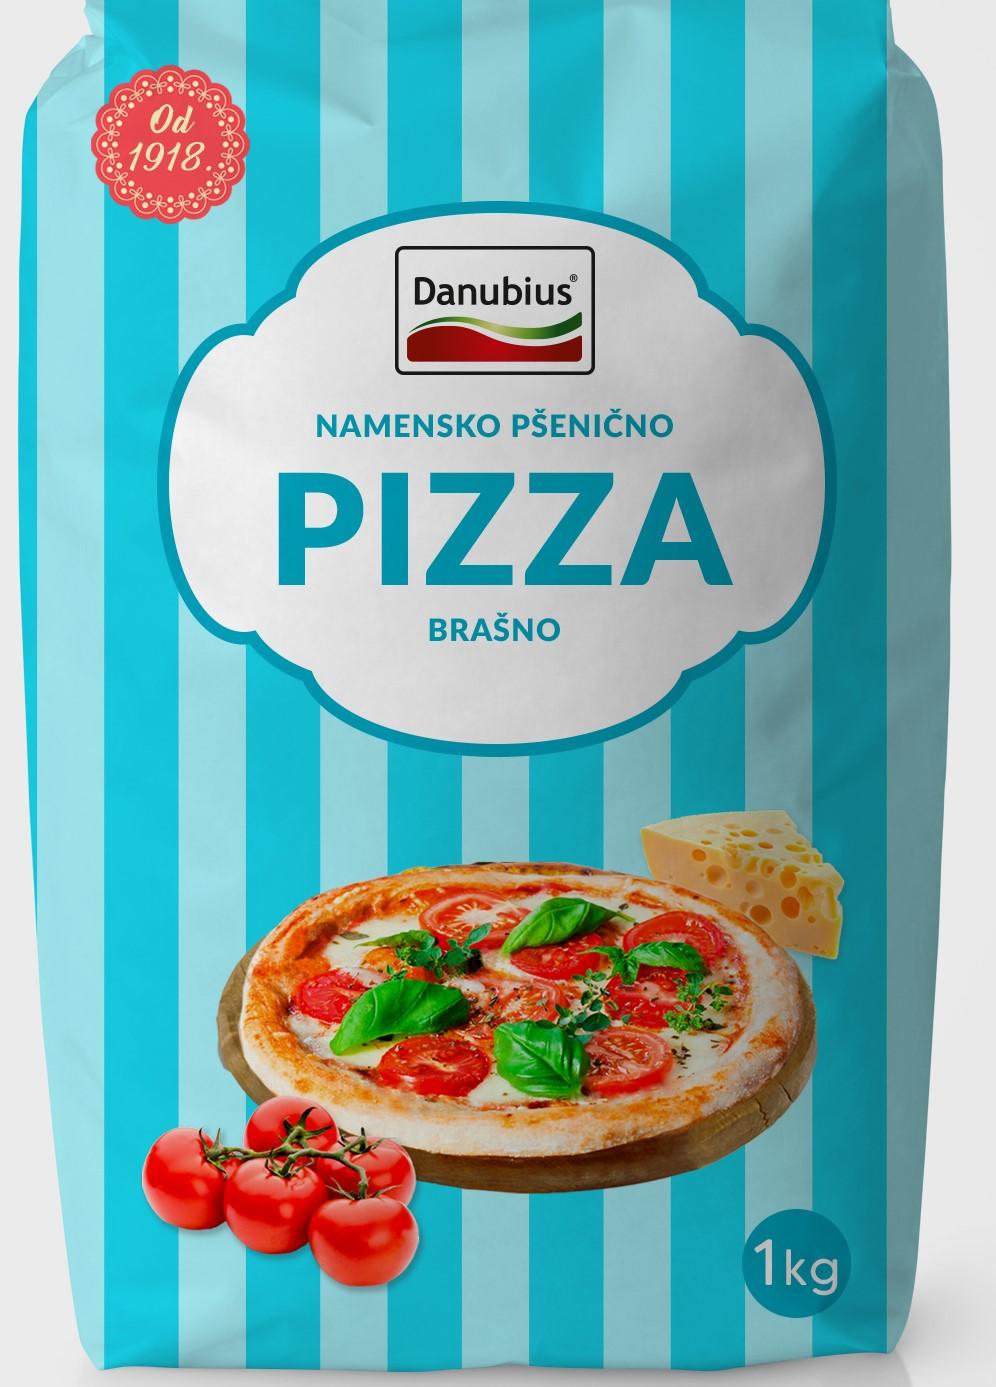 Selected image for DANUBIUS Namensko pšenično pizza brašno 1 kg